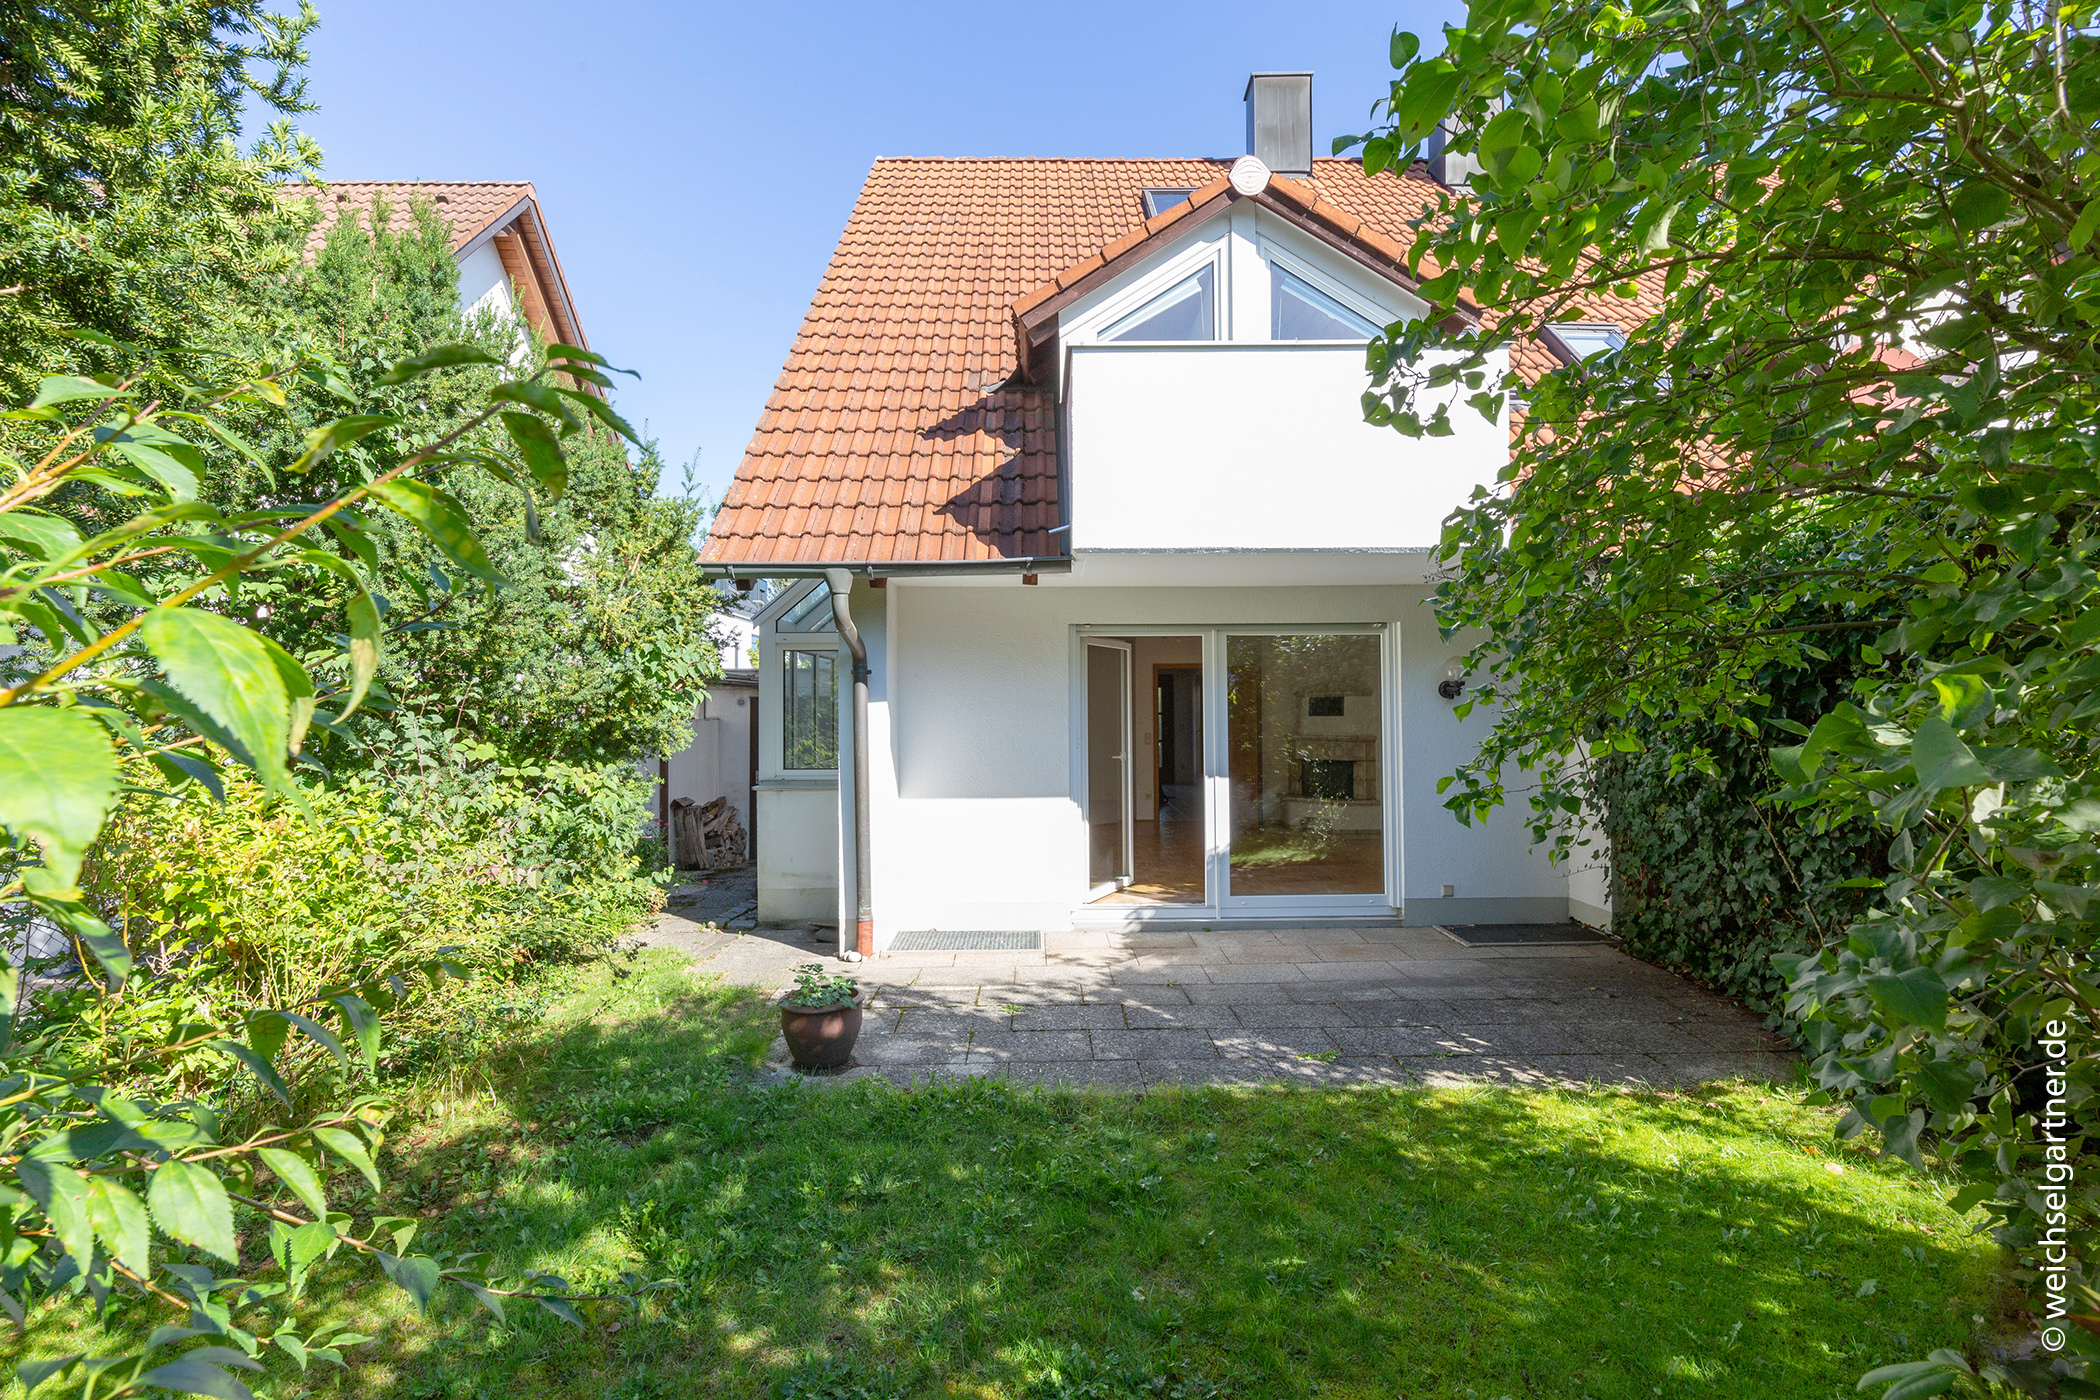 Schöne Doppelhaushälfte mit Südwest-Garten in ruhiger Wohnlage, 82008 Unterhaching, Doppelhaushälfte